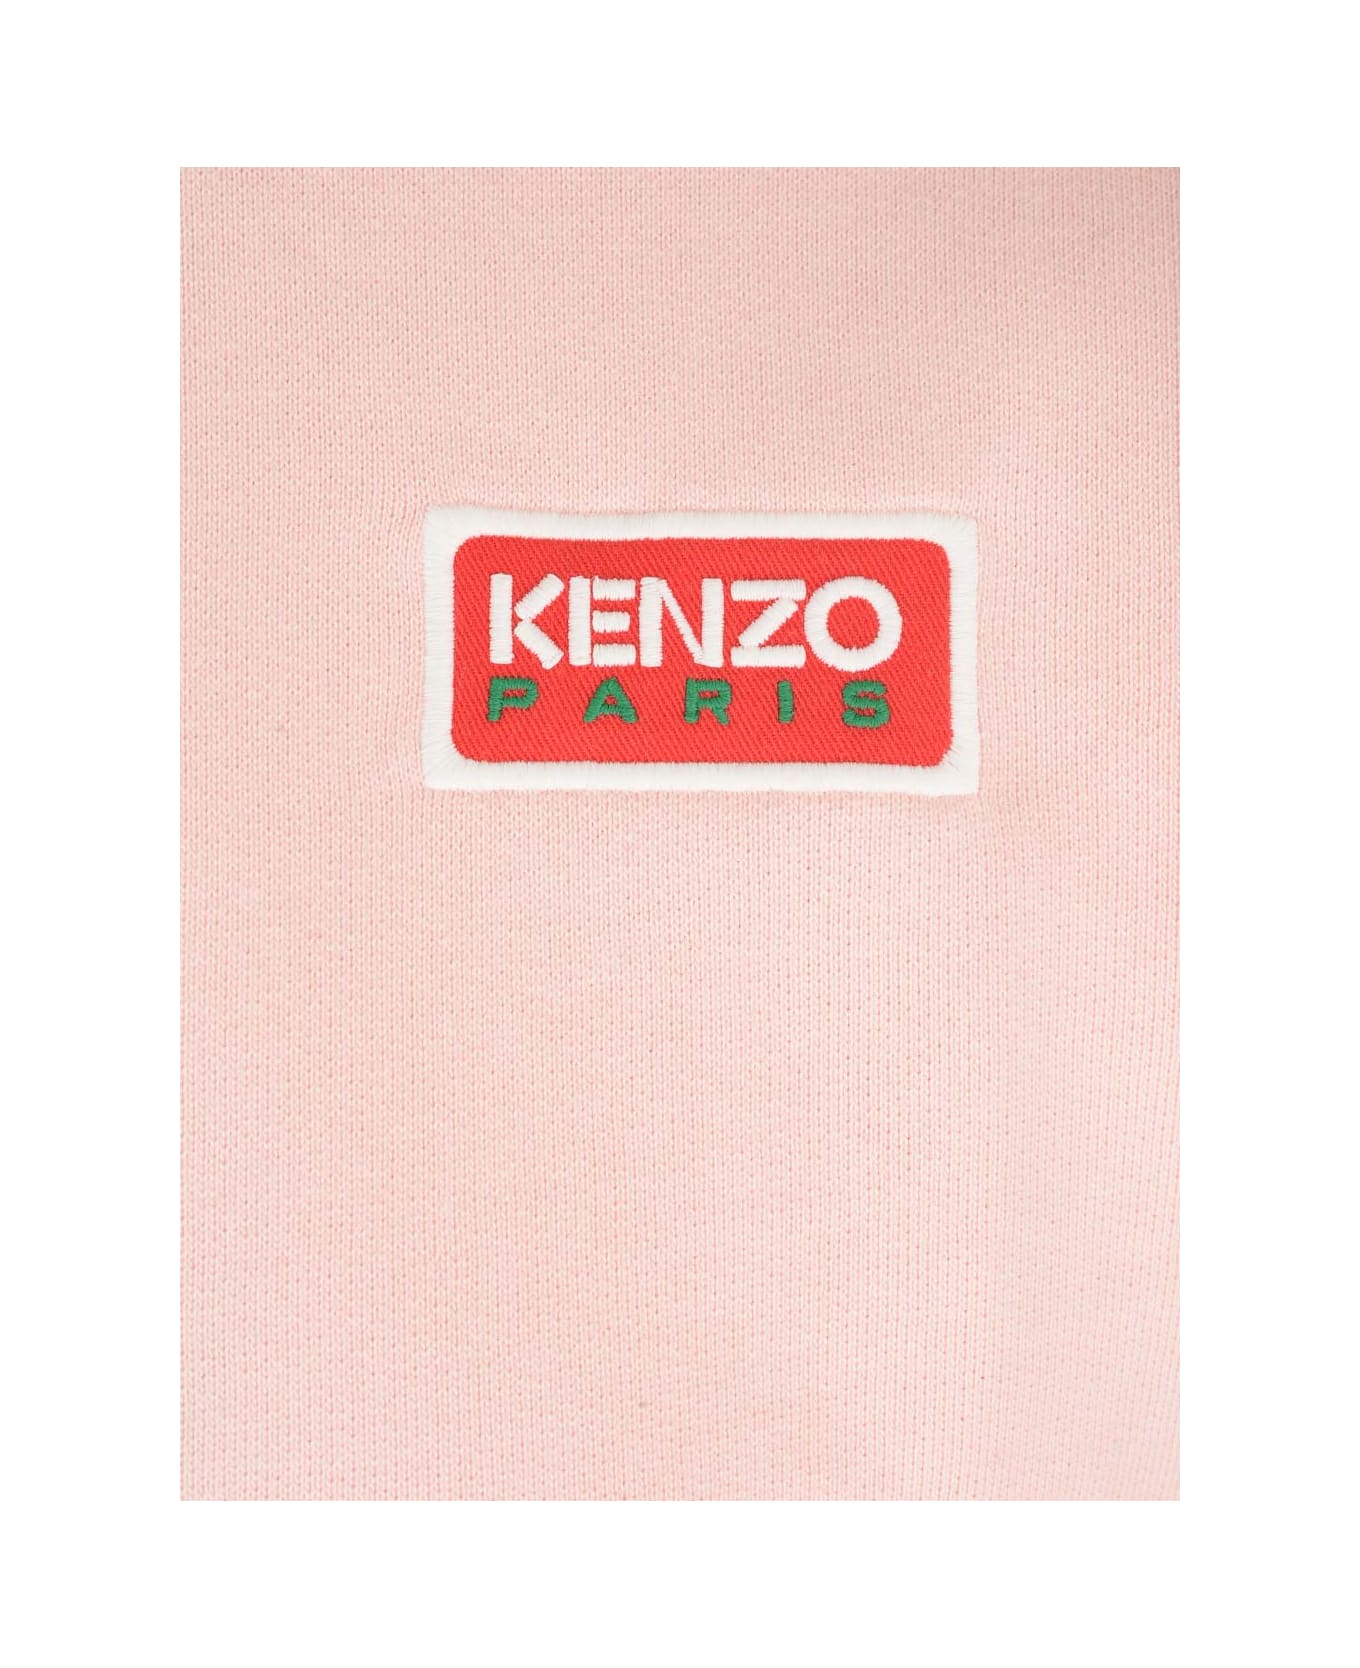 Kenzo Paris Regular Sweatshirt - Rose